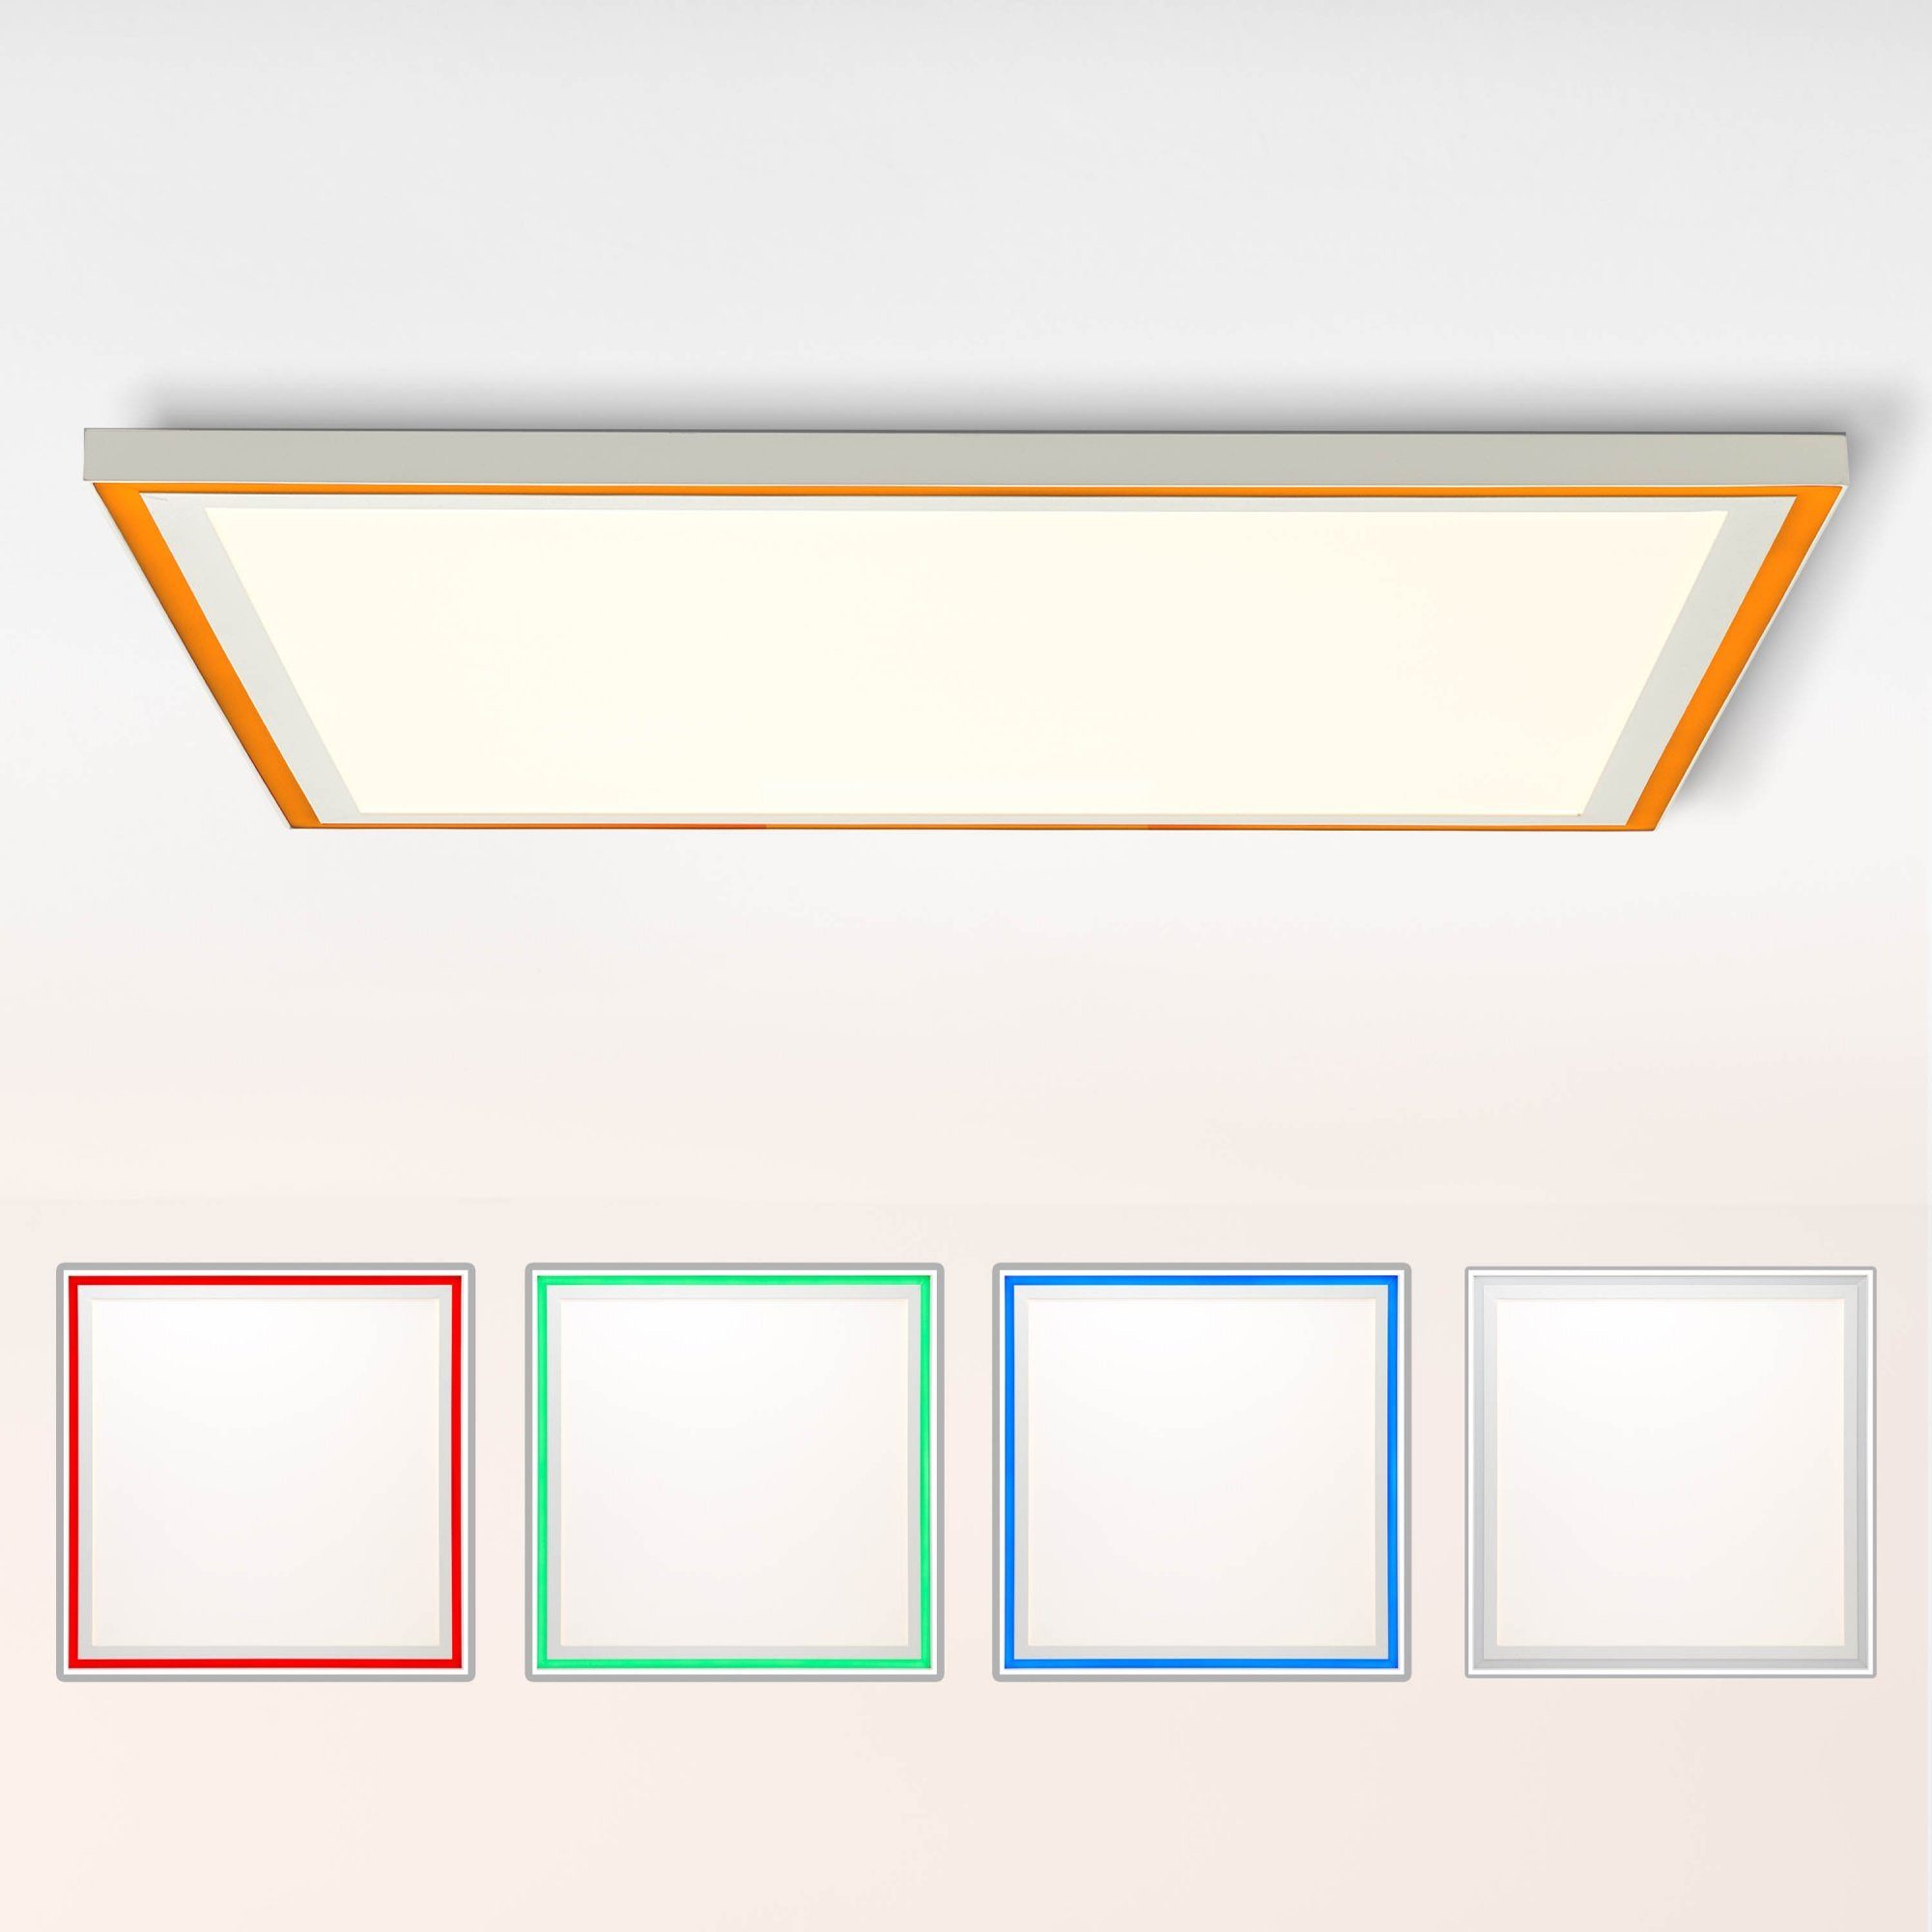 Lightbox Deckenleuchte, LED Deckenaufbau-Paneel mit RGB-Rahmen, dimmbar,  3800 Lumen, CCT - Farbtemperatur einstellbar, Memoryfunktion über  Wandschalter, 60x60cm, Metall/Kunststoff, weiß